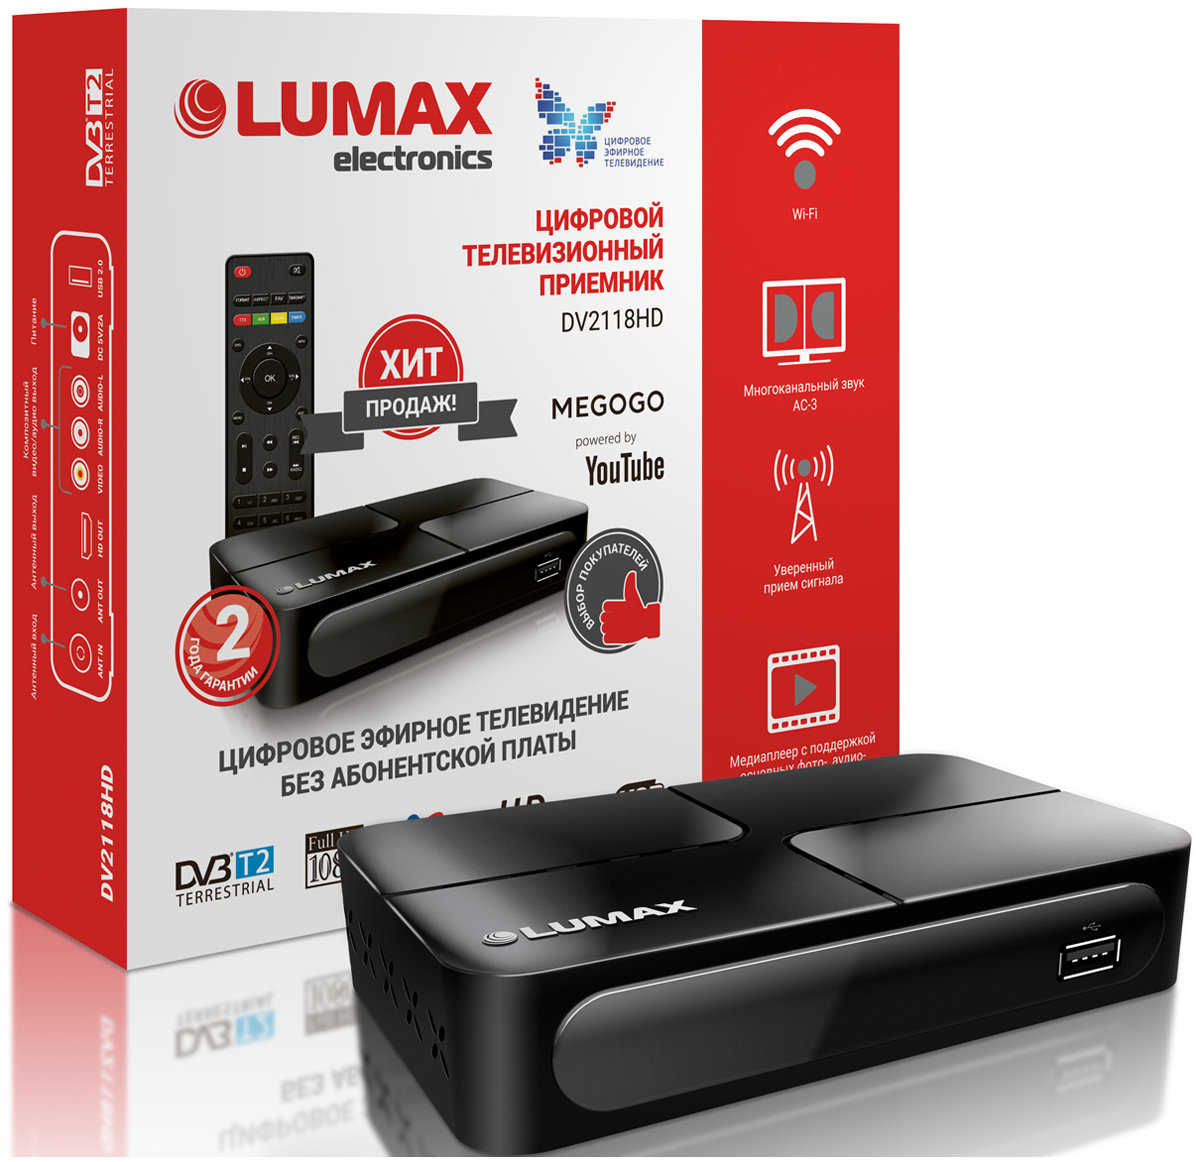 Цифровой телевизионный ресивер Lumax DV 2118 HD цена и фото